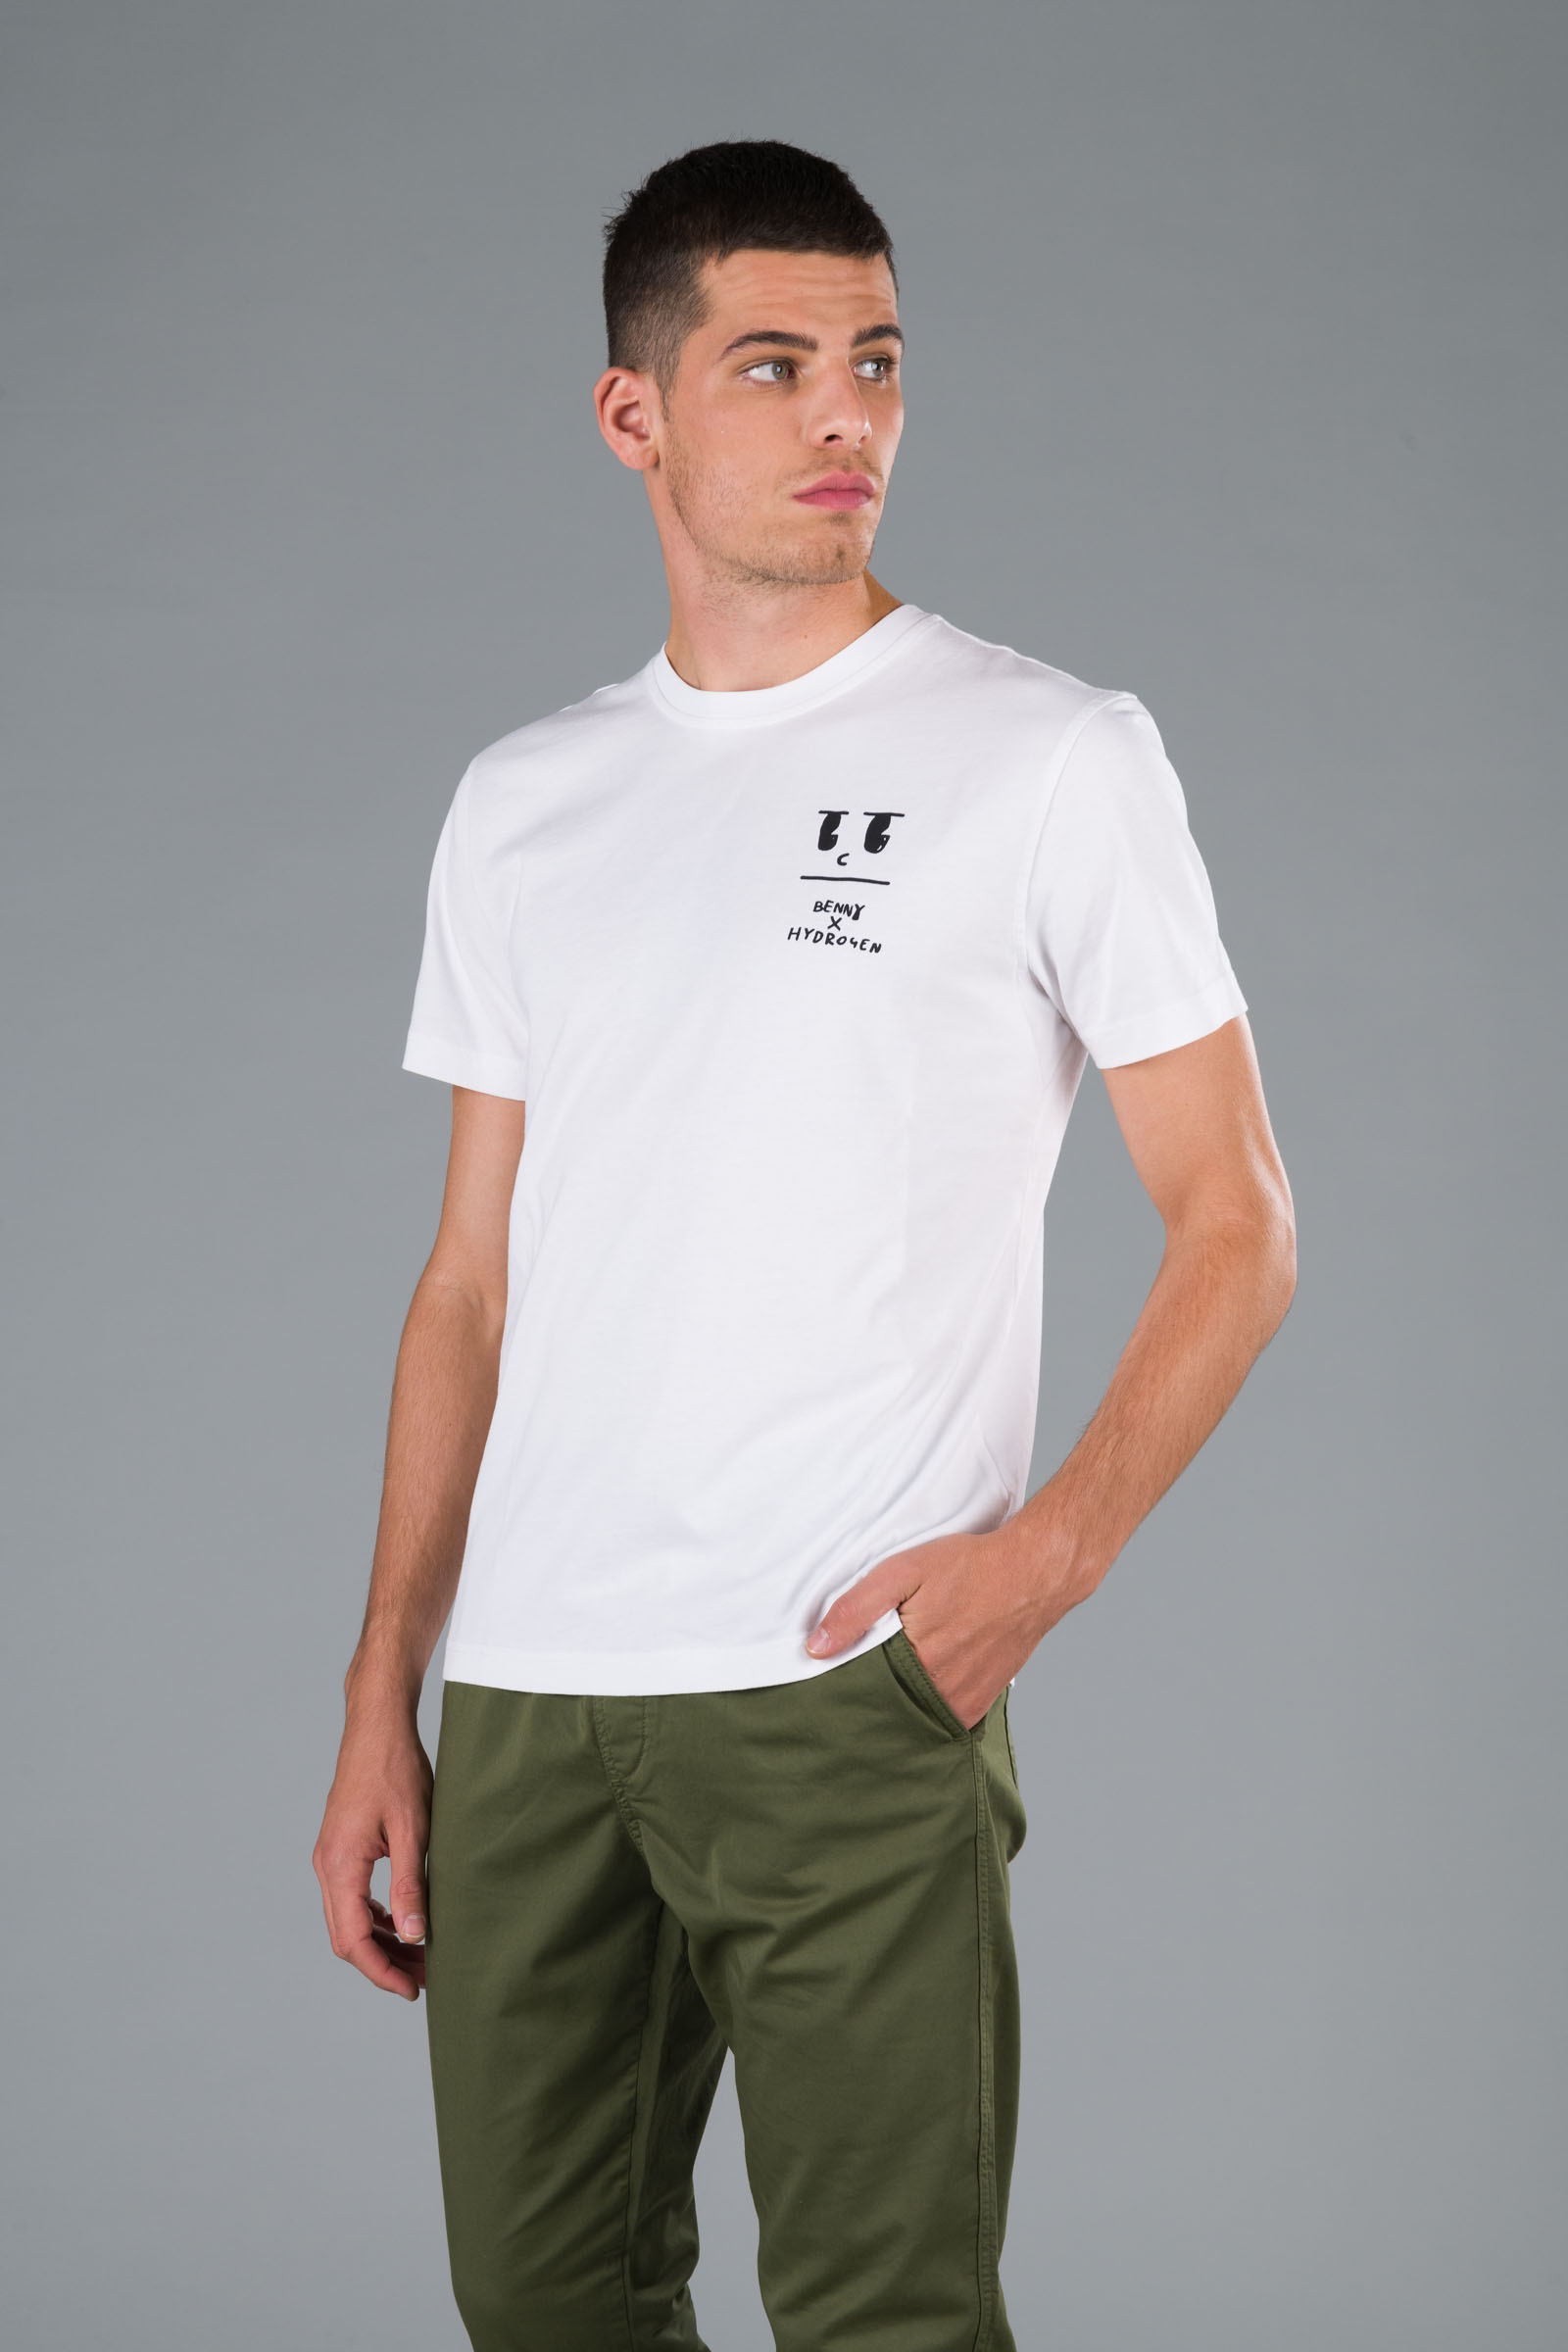 BENNY TEE - WHITE - Hydrogen - Luxury Sportwear